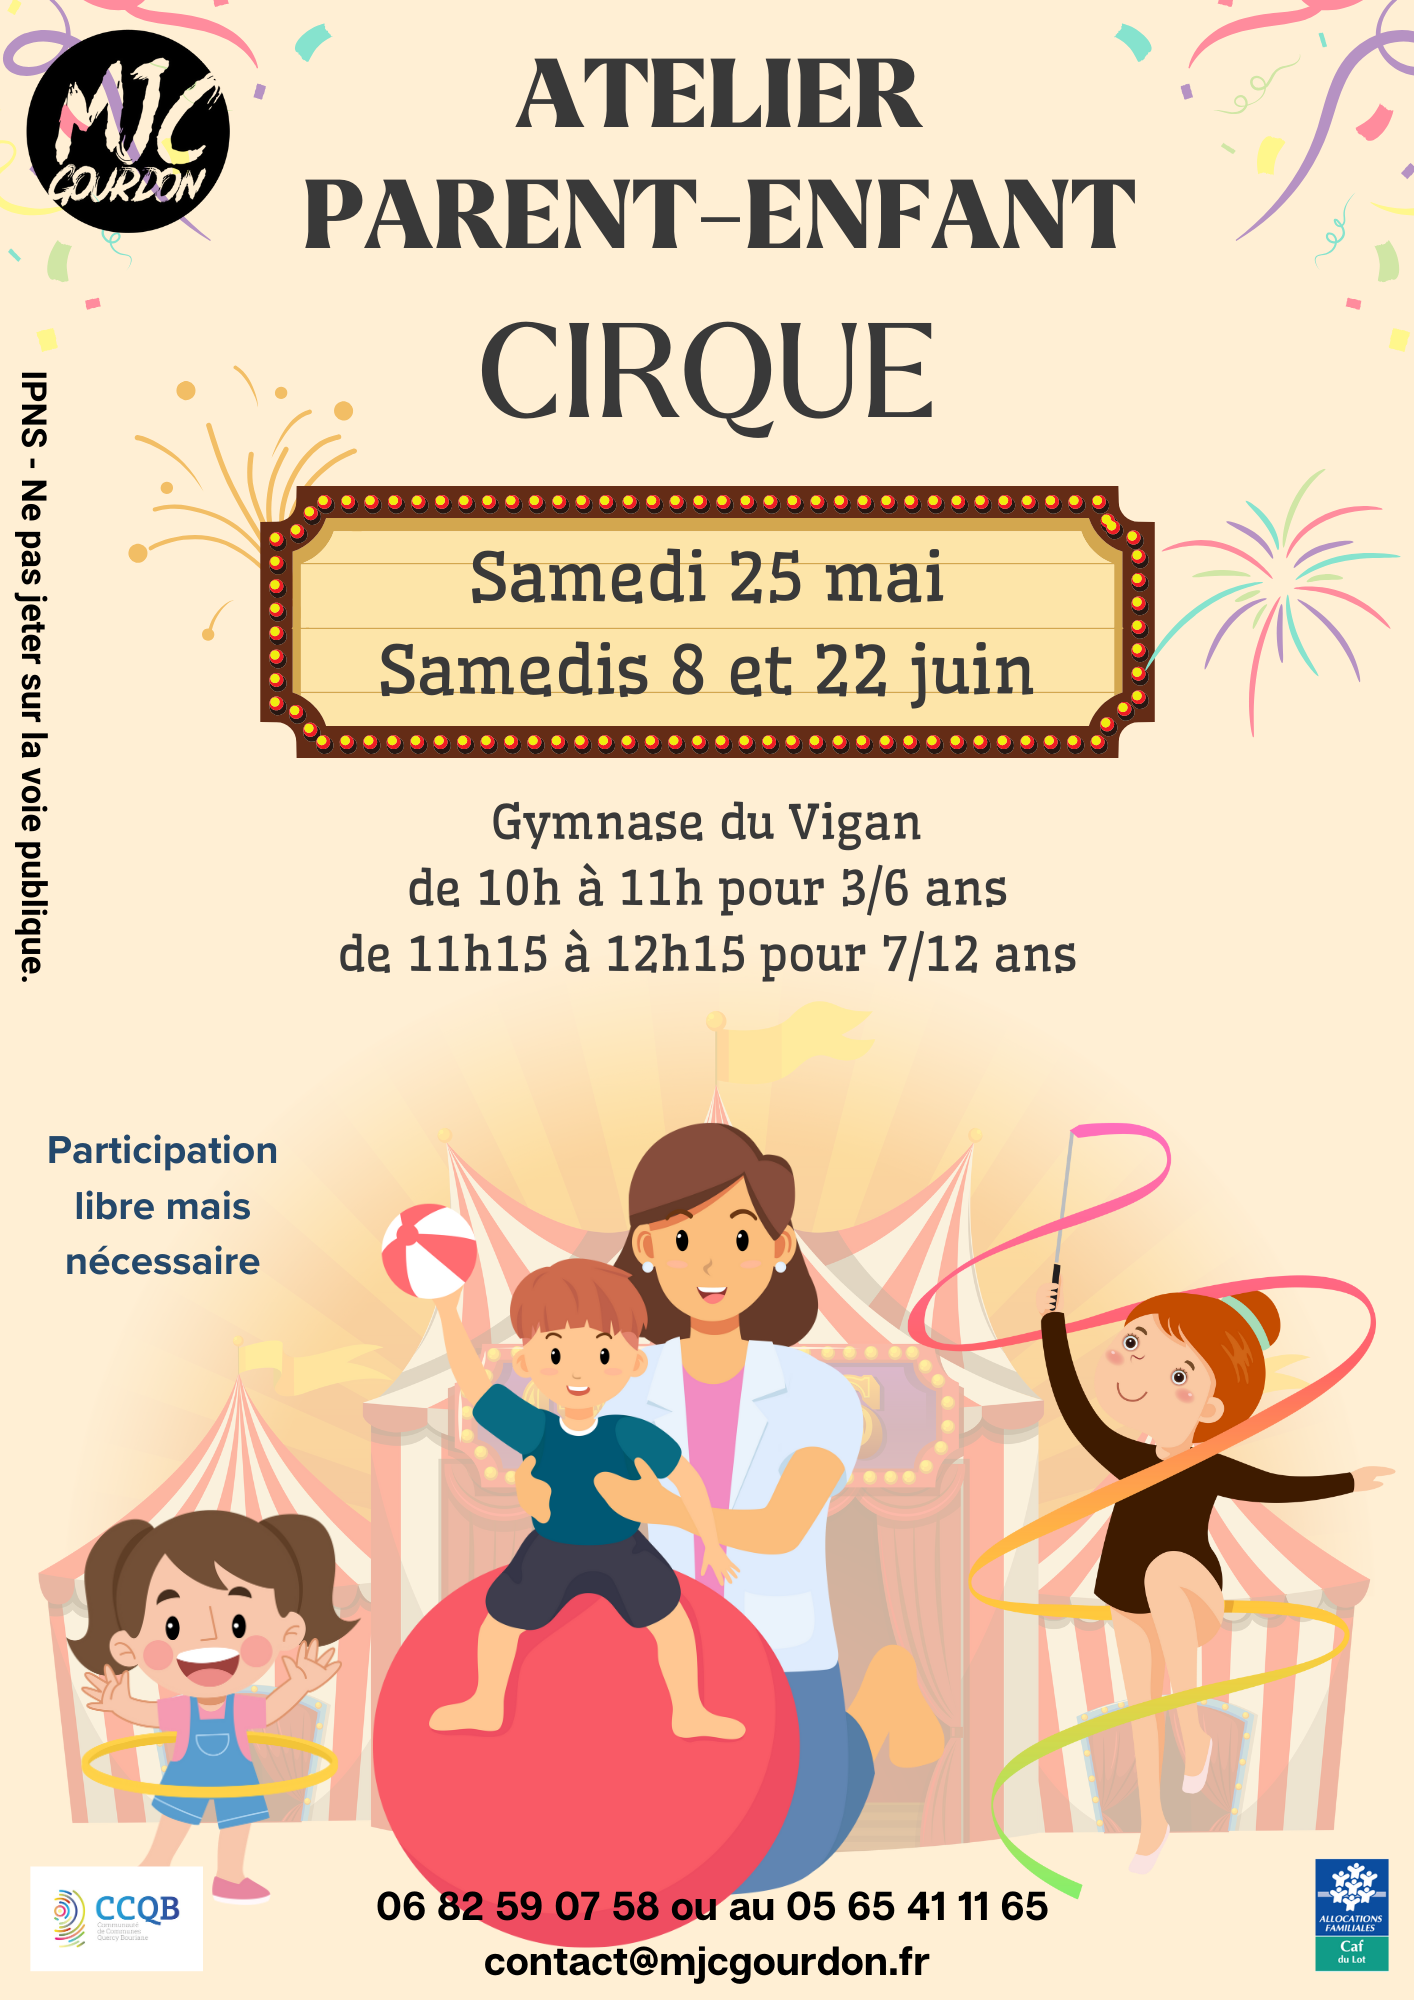 Ateliers Parents-Enfants : Cirque